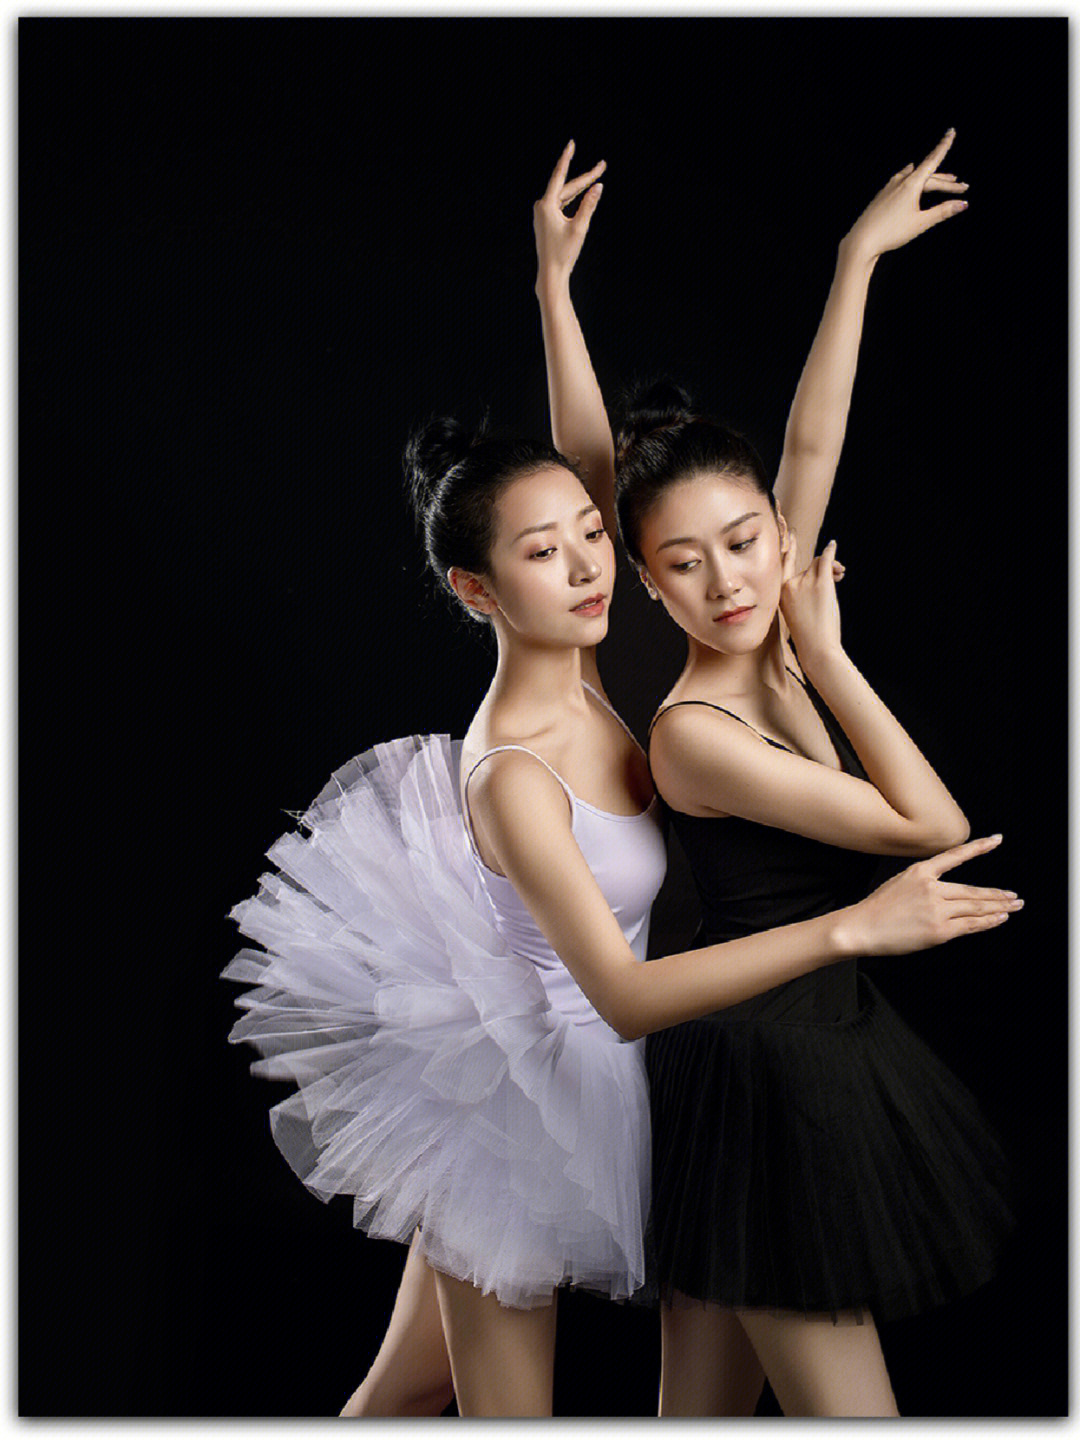 双人芭蕾舞图片 唯美图片